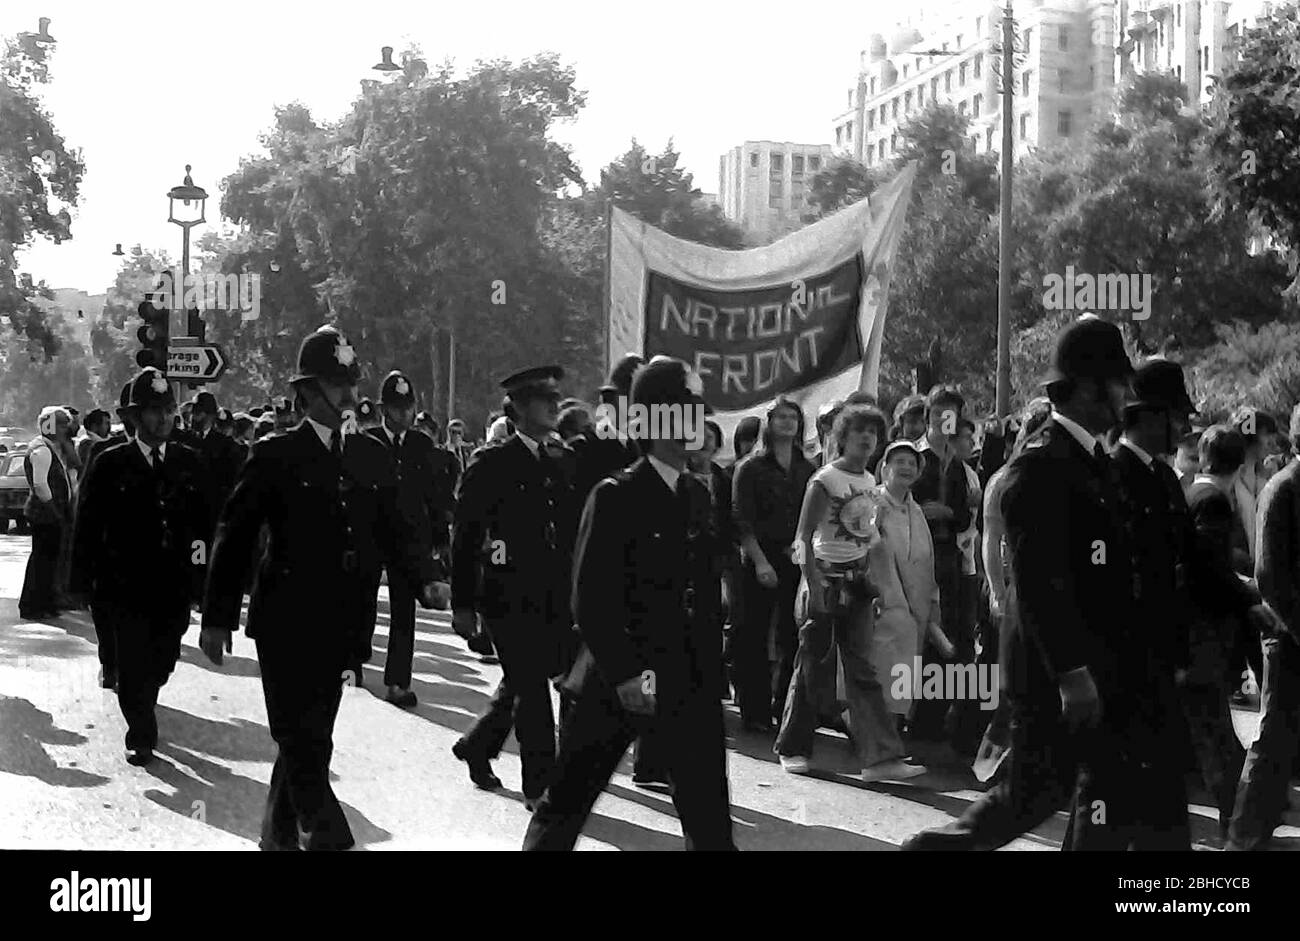 Une marche du Front National d'extrême droite, Londres, Angleterre, Royaume-Uni, entourée de policiers, septembre 1978. Le même jour, une marche de la Ligue anti-nazie a eu lieu à Londres, donc la police y était en grand nombre. Banque D'Images